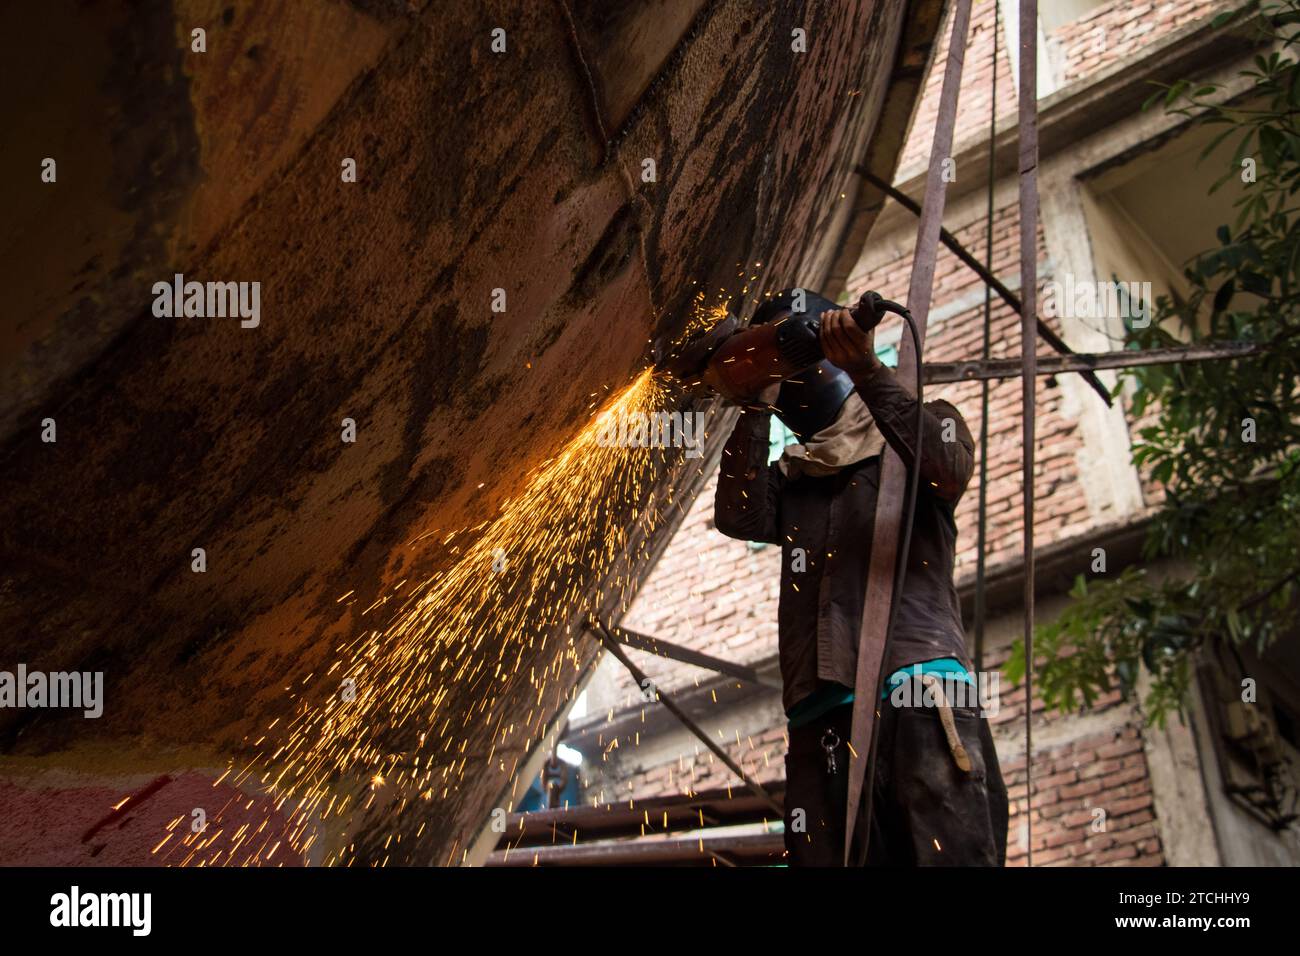 Stile di vita quotidiano degli abitanti dei cantieri navali del Bangladesh. Questa immagine è stata catturata da Dacca, Bangladesh, il 30 luglio 2022. Foto Stock